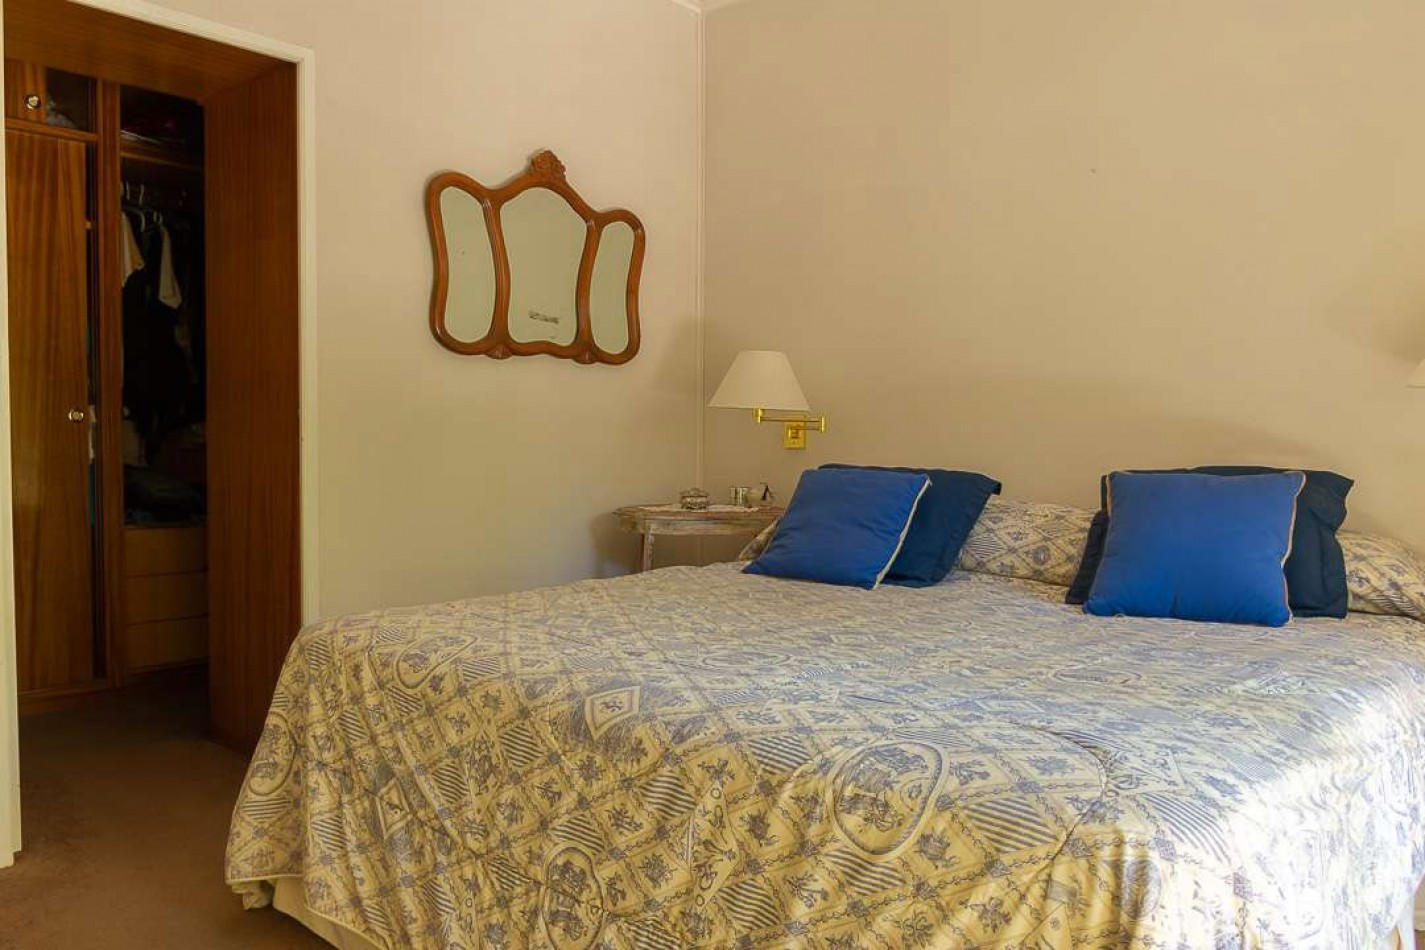 Casa de 3 Dormitorios - Roca 190, Acebal ACEPTA PERMUTA/ FINANCIACION